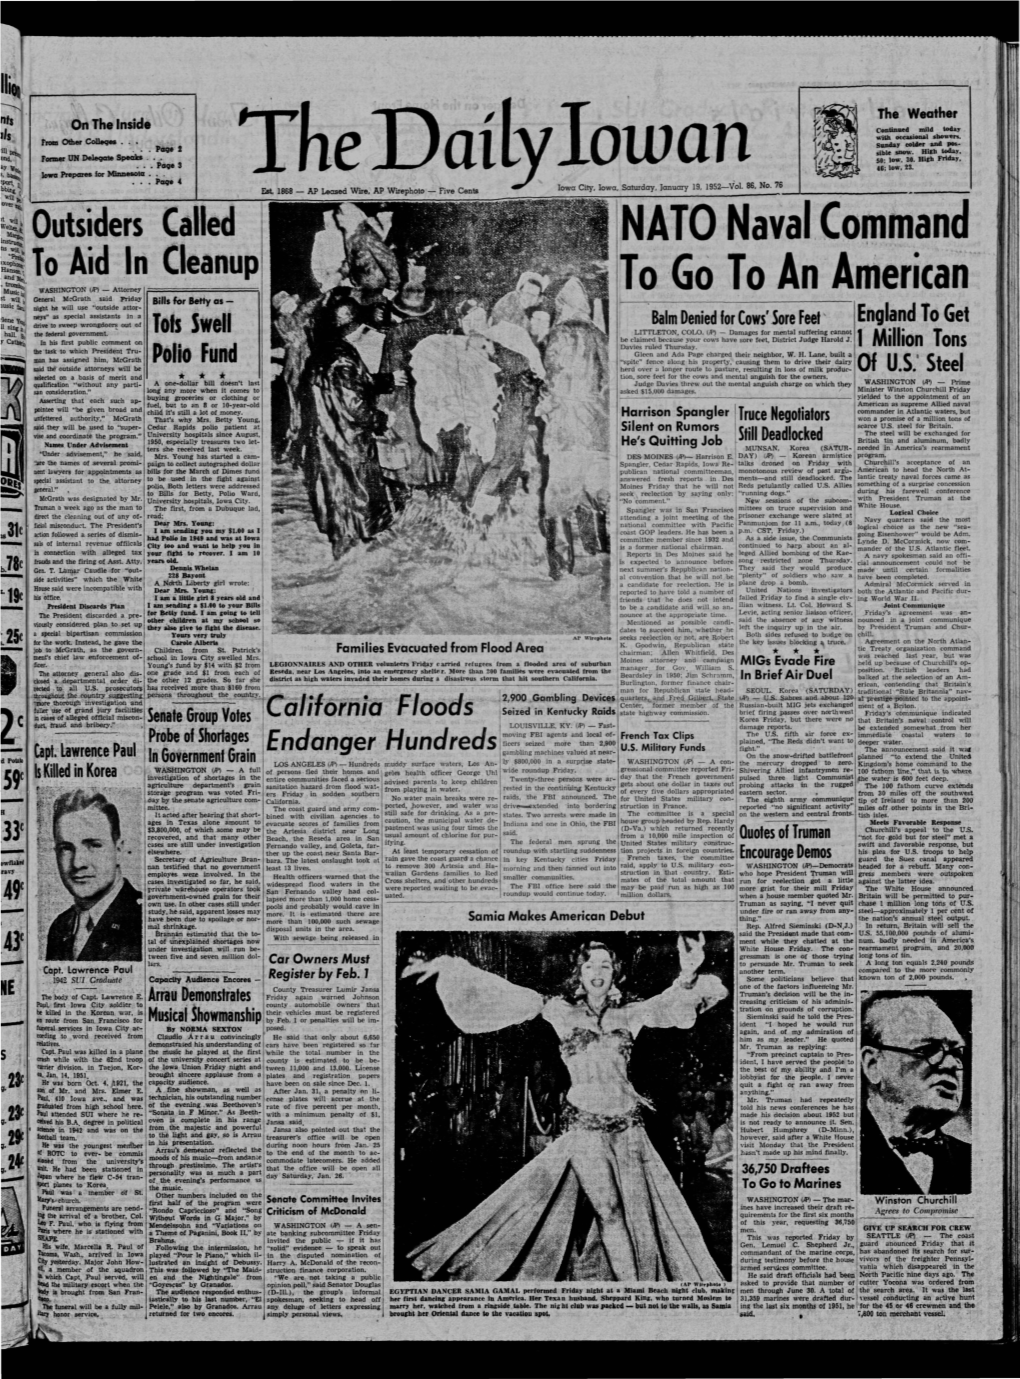 Daily Iowan (Iowa City, Iowa), 1952-01-19